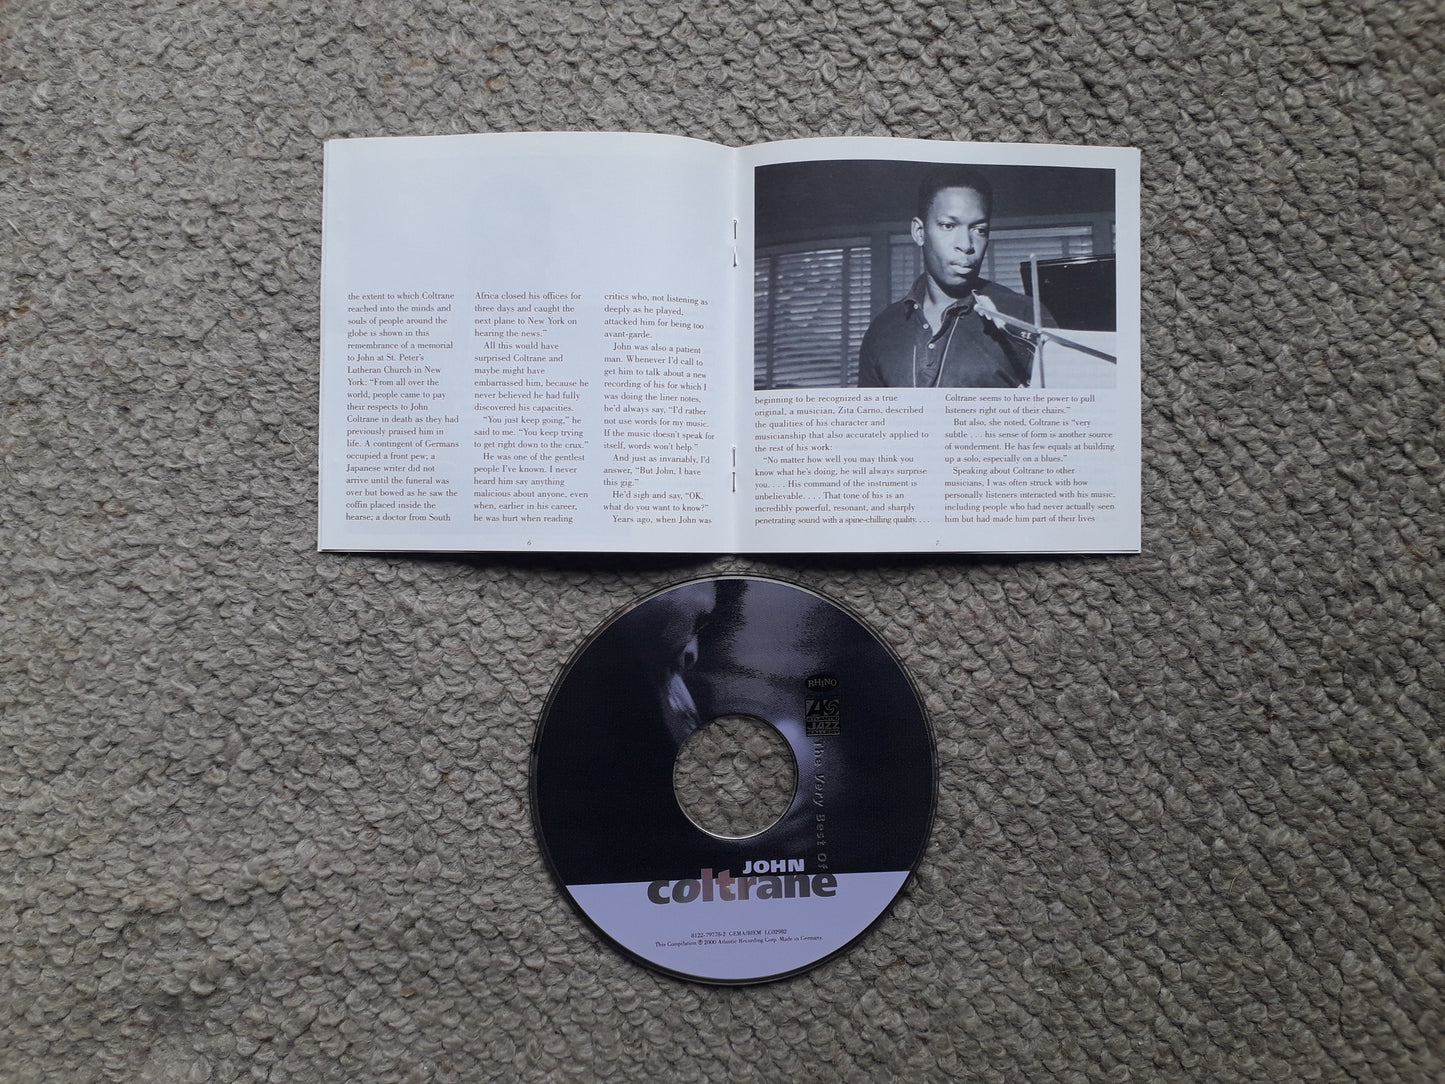 John Coltrane-The Very Best Of John Coltrane CD (8122-79778-2)